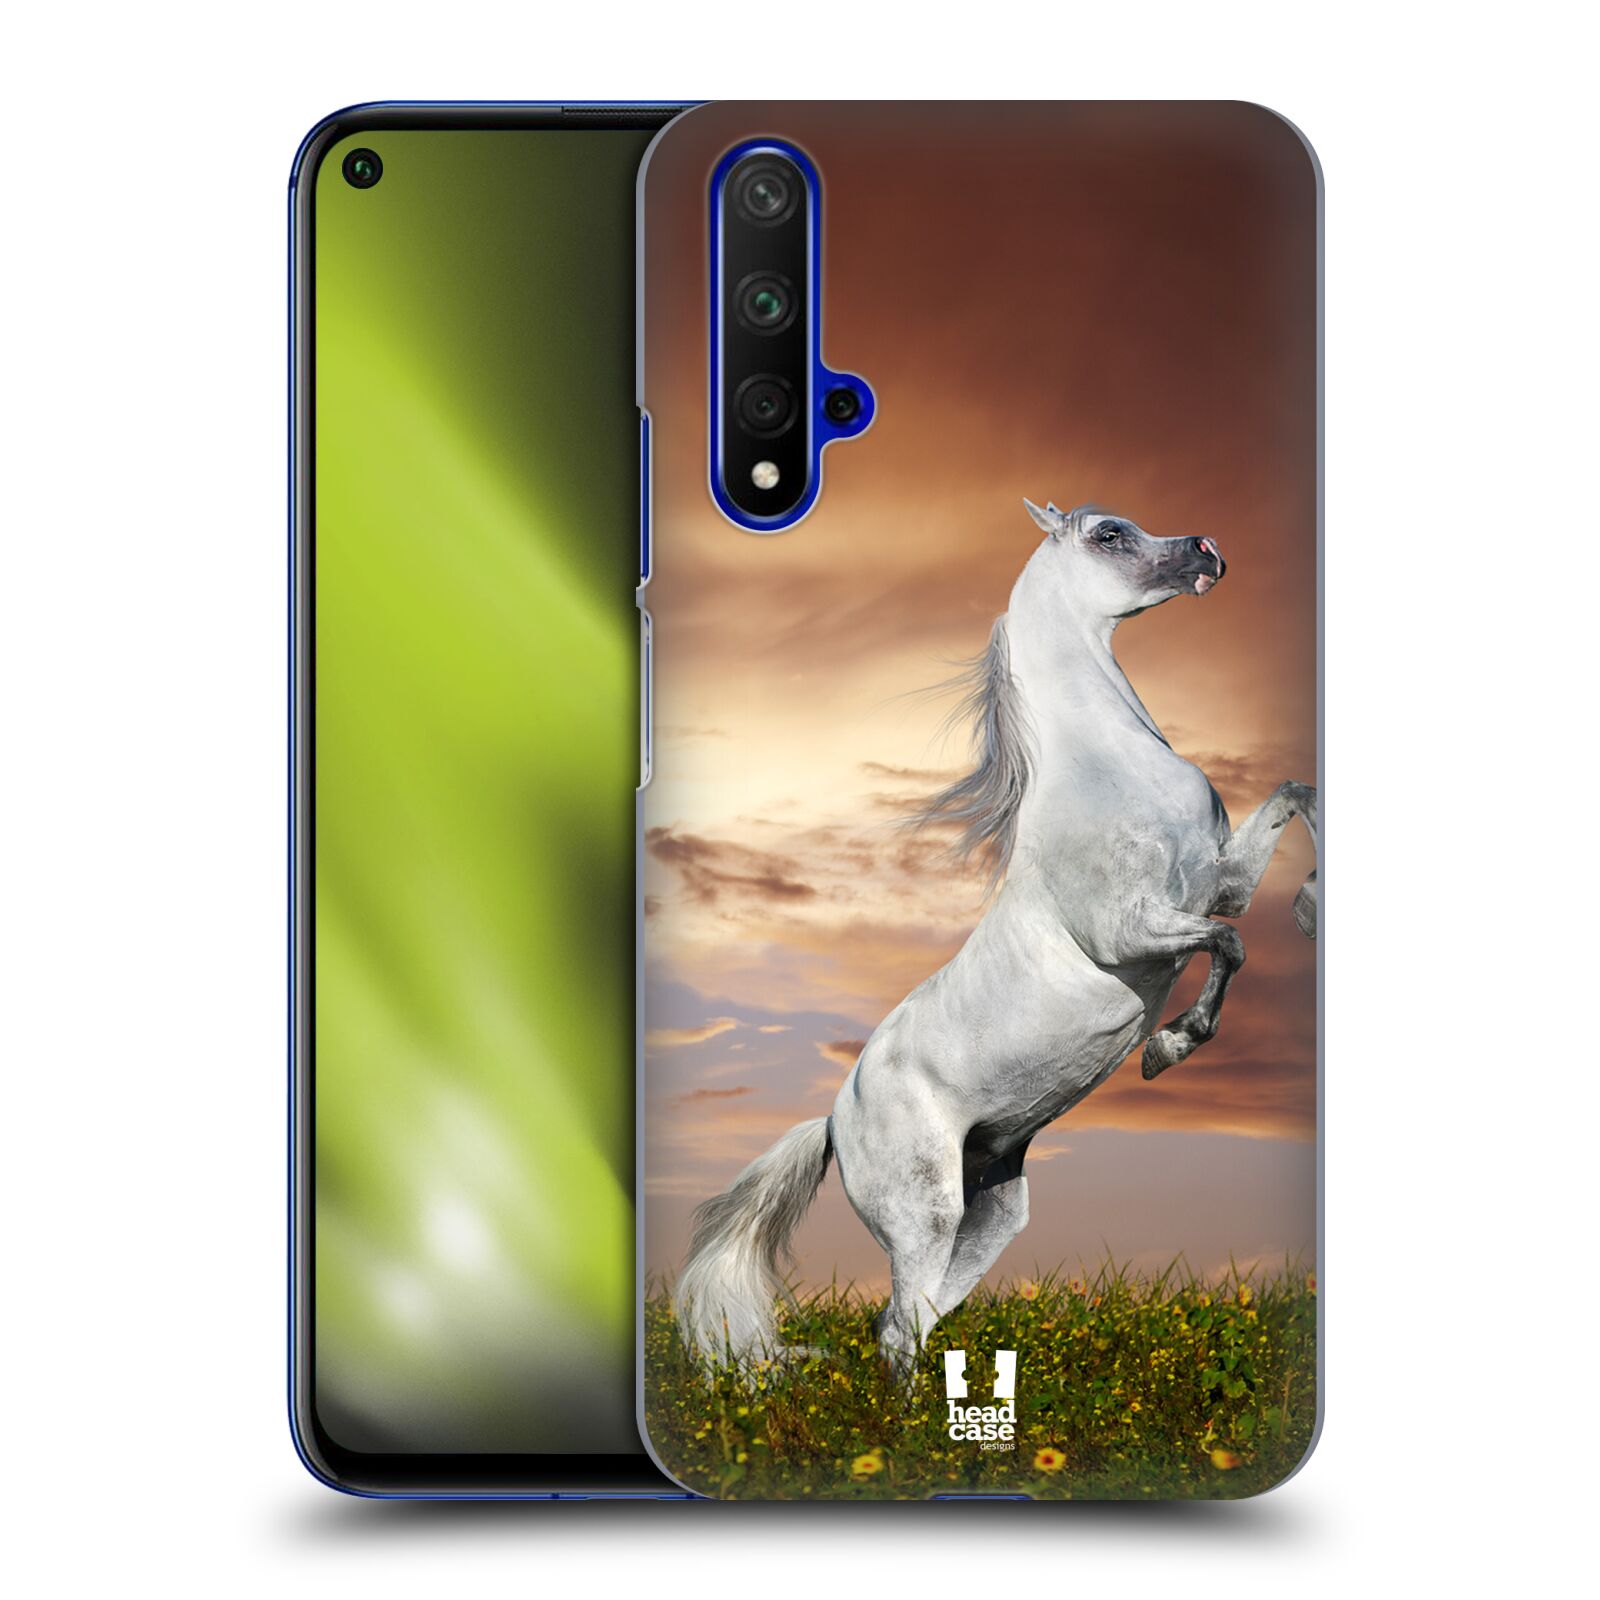 Zadní obal pro mobil Honor 20 - HEAD CASE - Svět zvířat divoký kůň